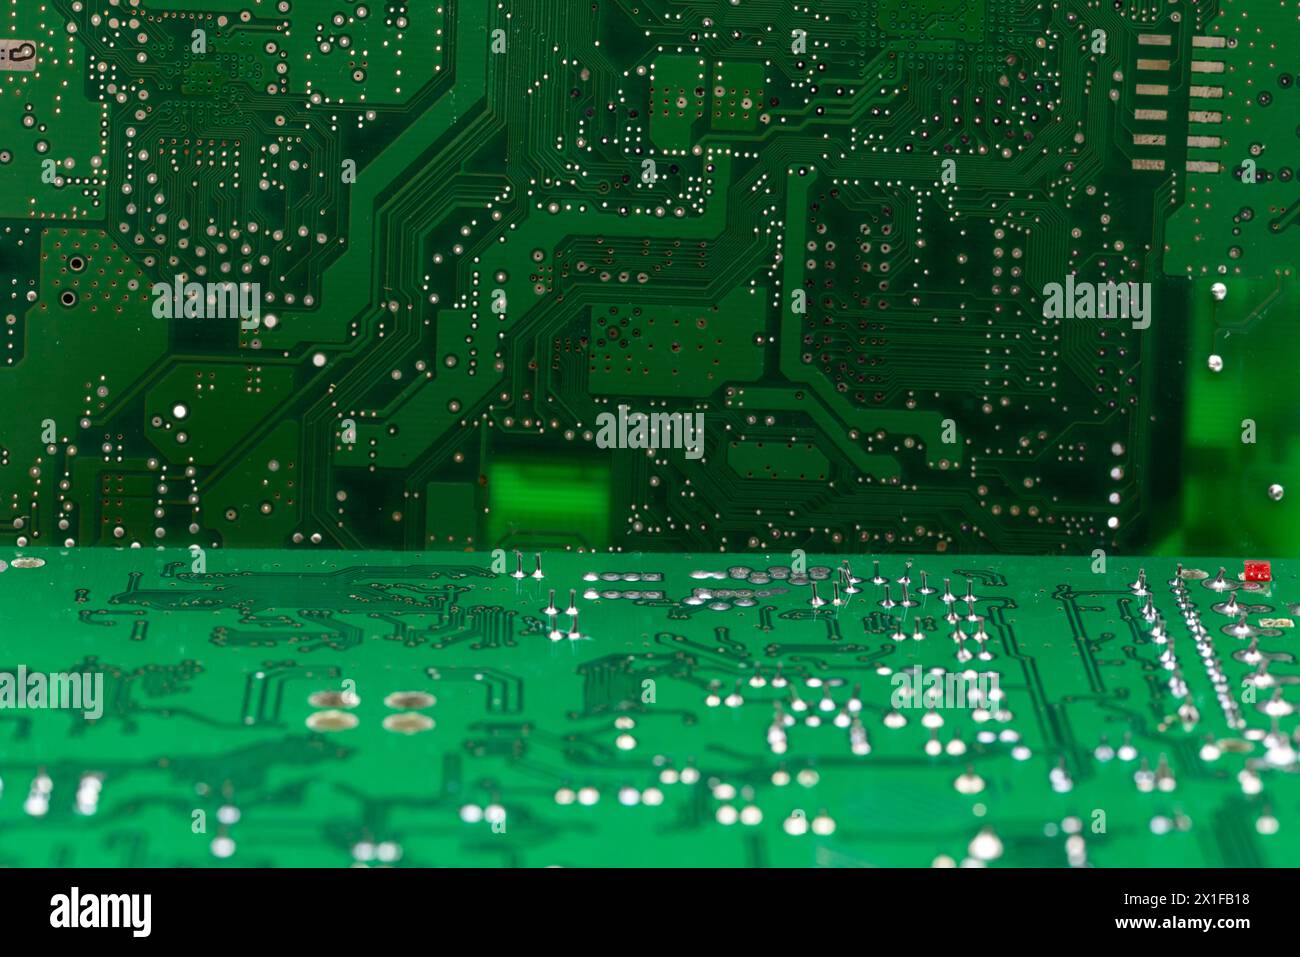 Detalle de múltiples de circuitos impresos de una placa electrónica de color verde Stock Photo